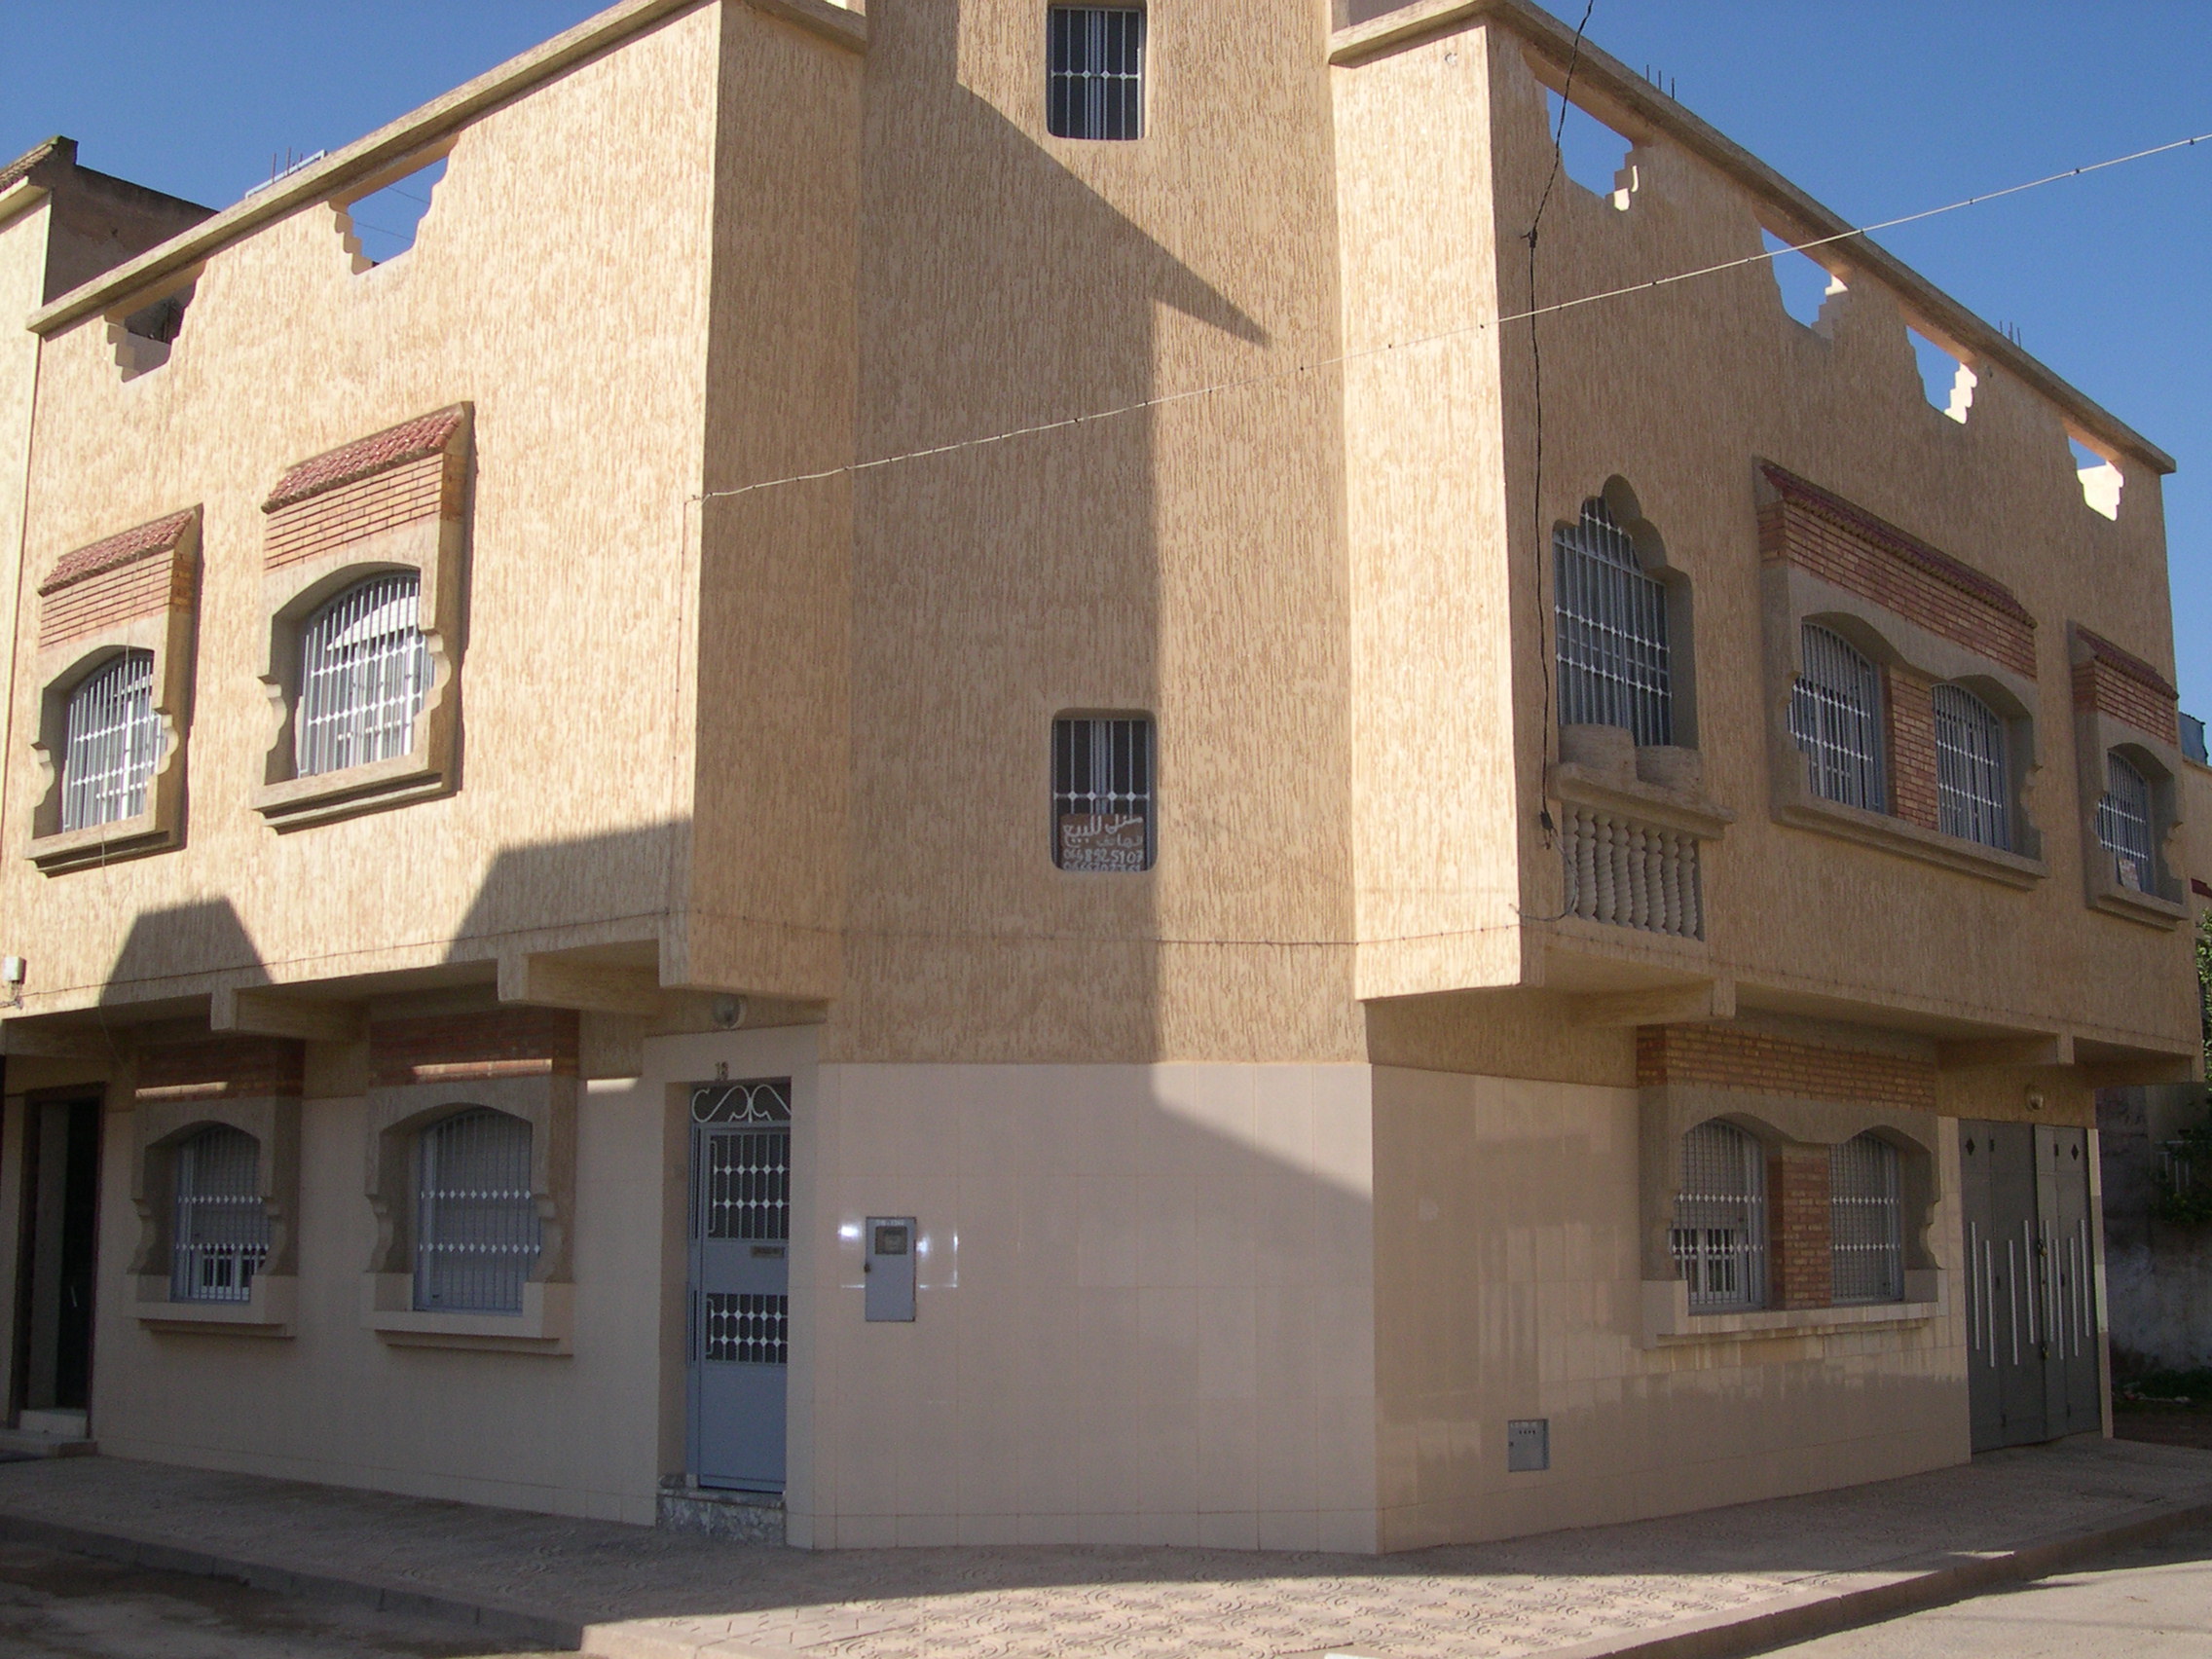 Maison avec étage au centre ville d'Oujda